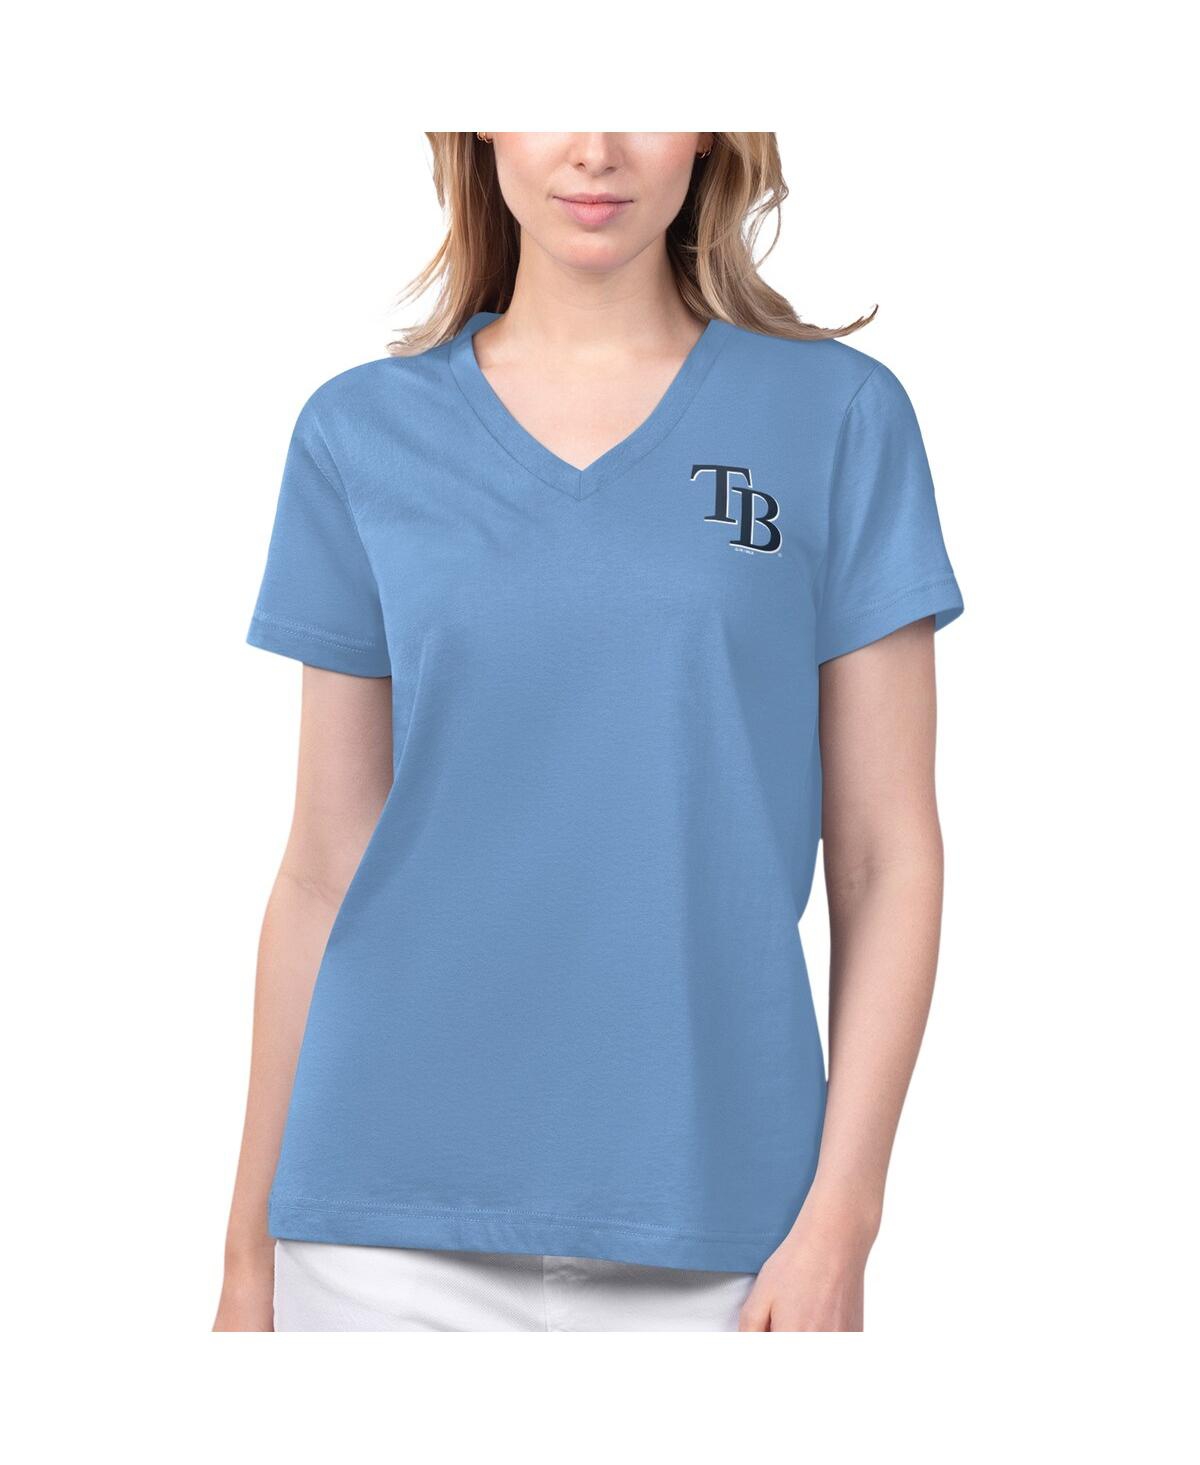 Women's Margaritaville Light Blue Tampa Bay Rays Game Time V-Neck T-shirt - Light Blue